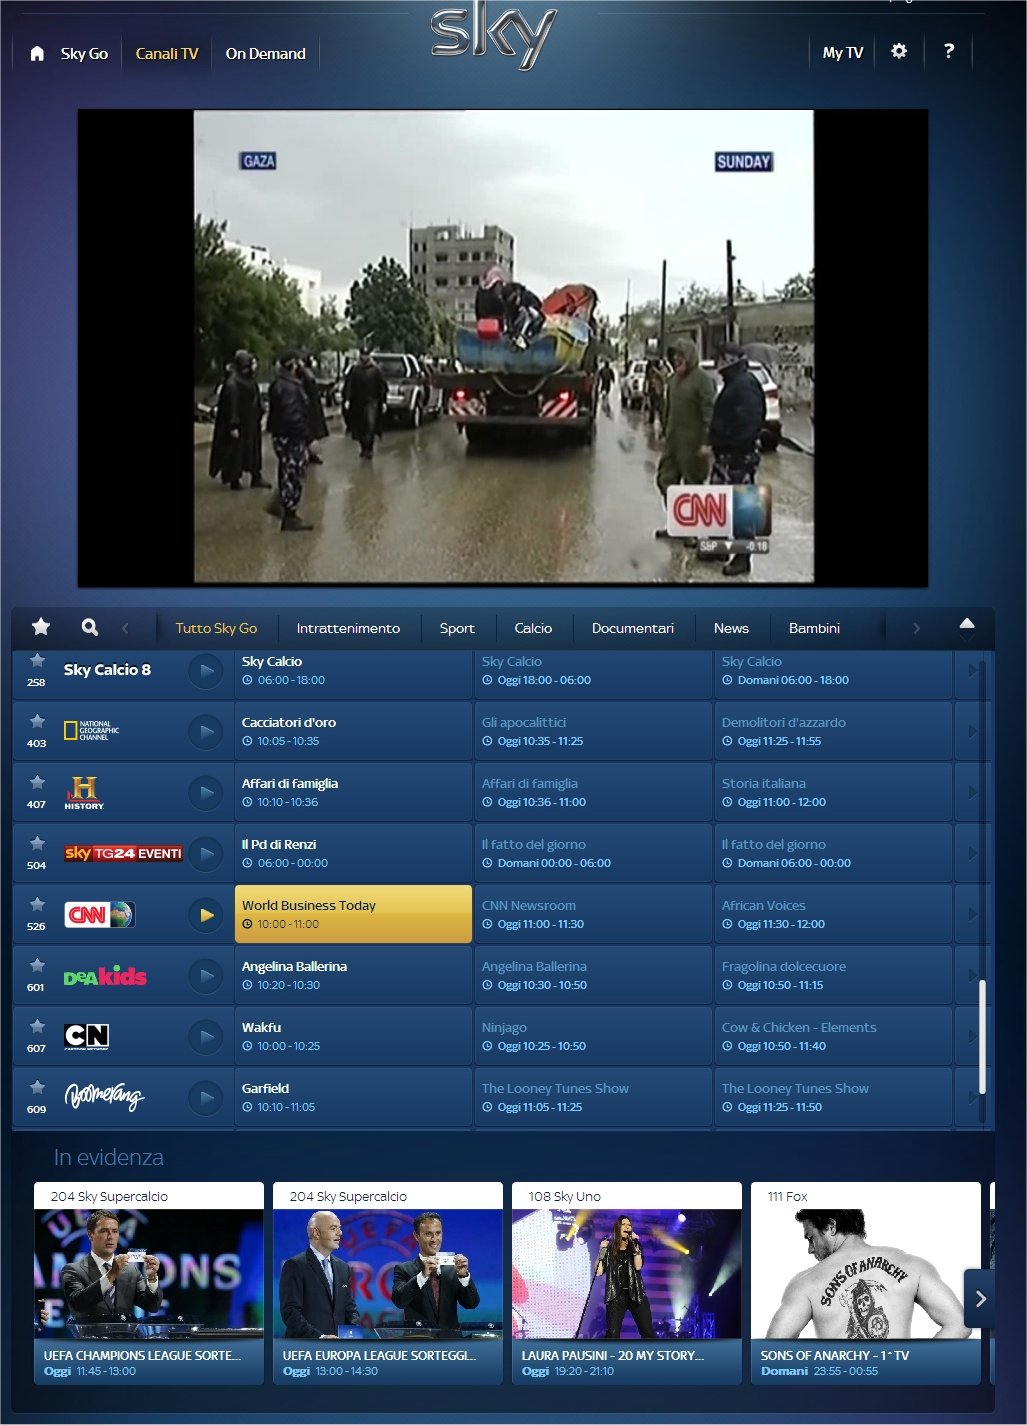 CNN International arriva da oggi in diretta streaming su Sky Go